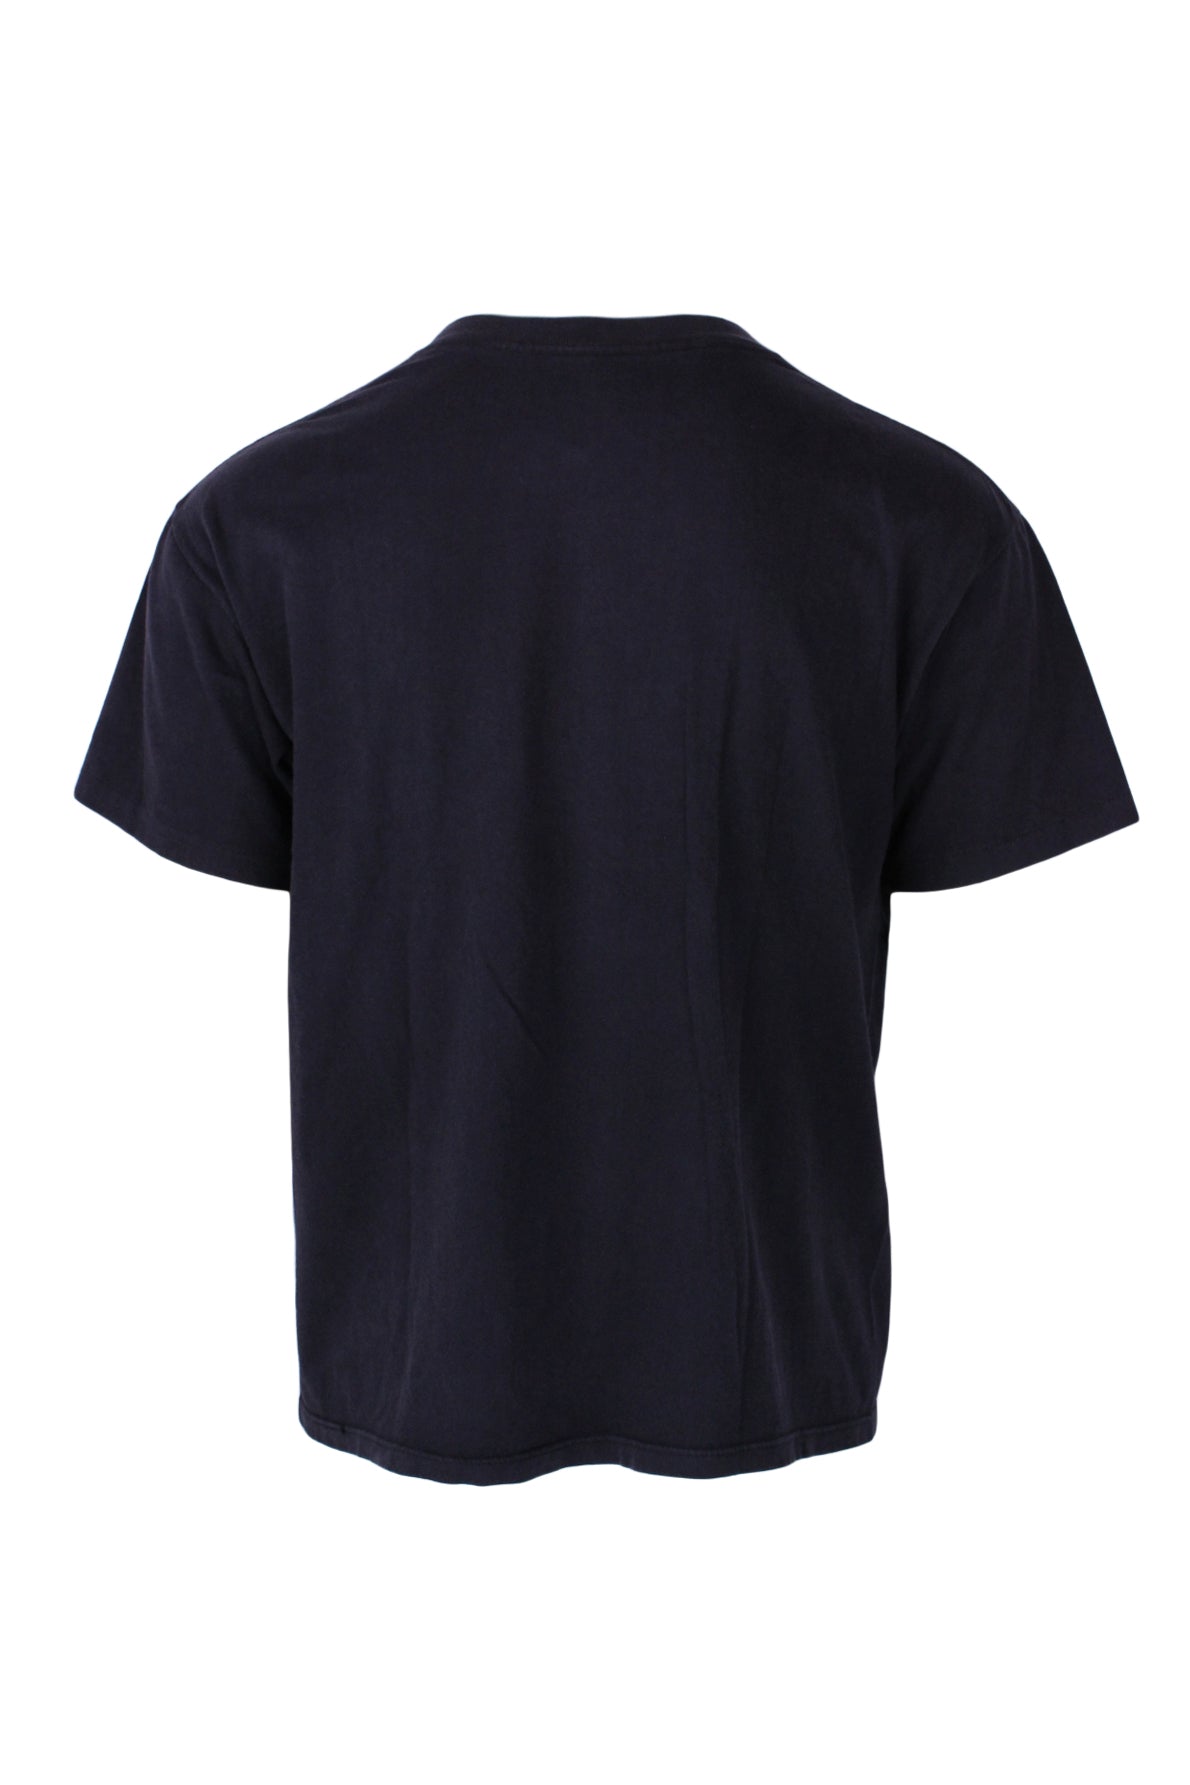 rear of black short sleeve t-shirt